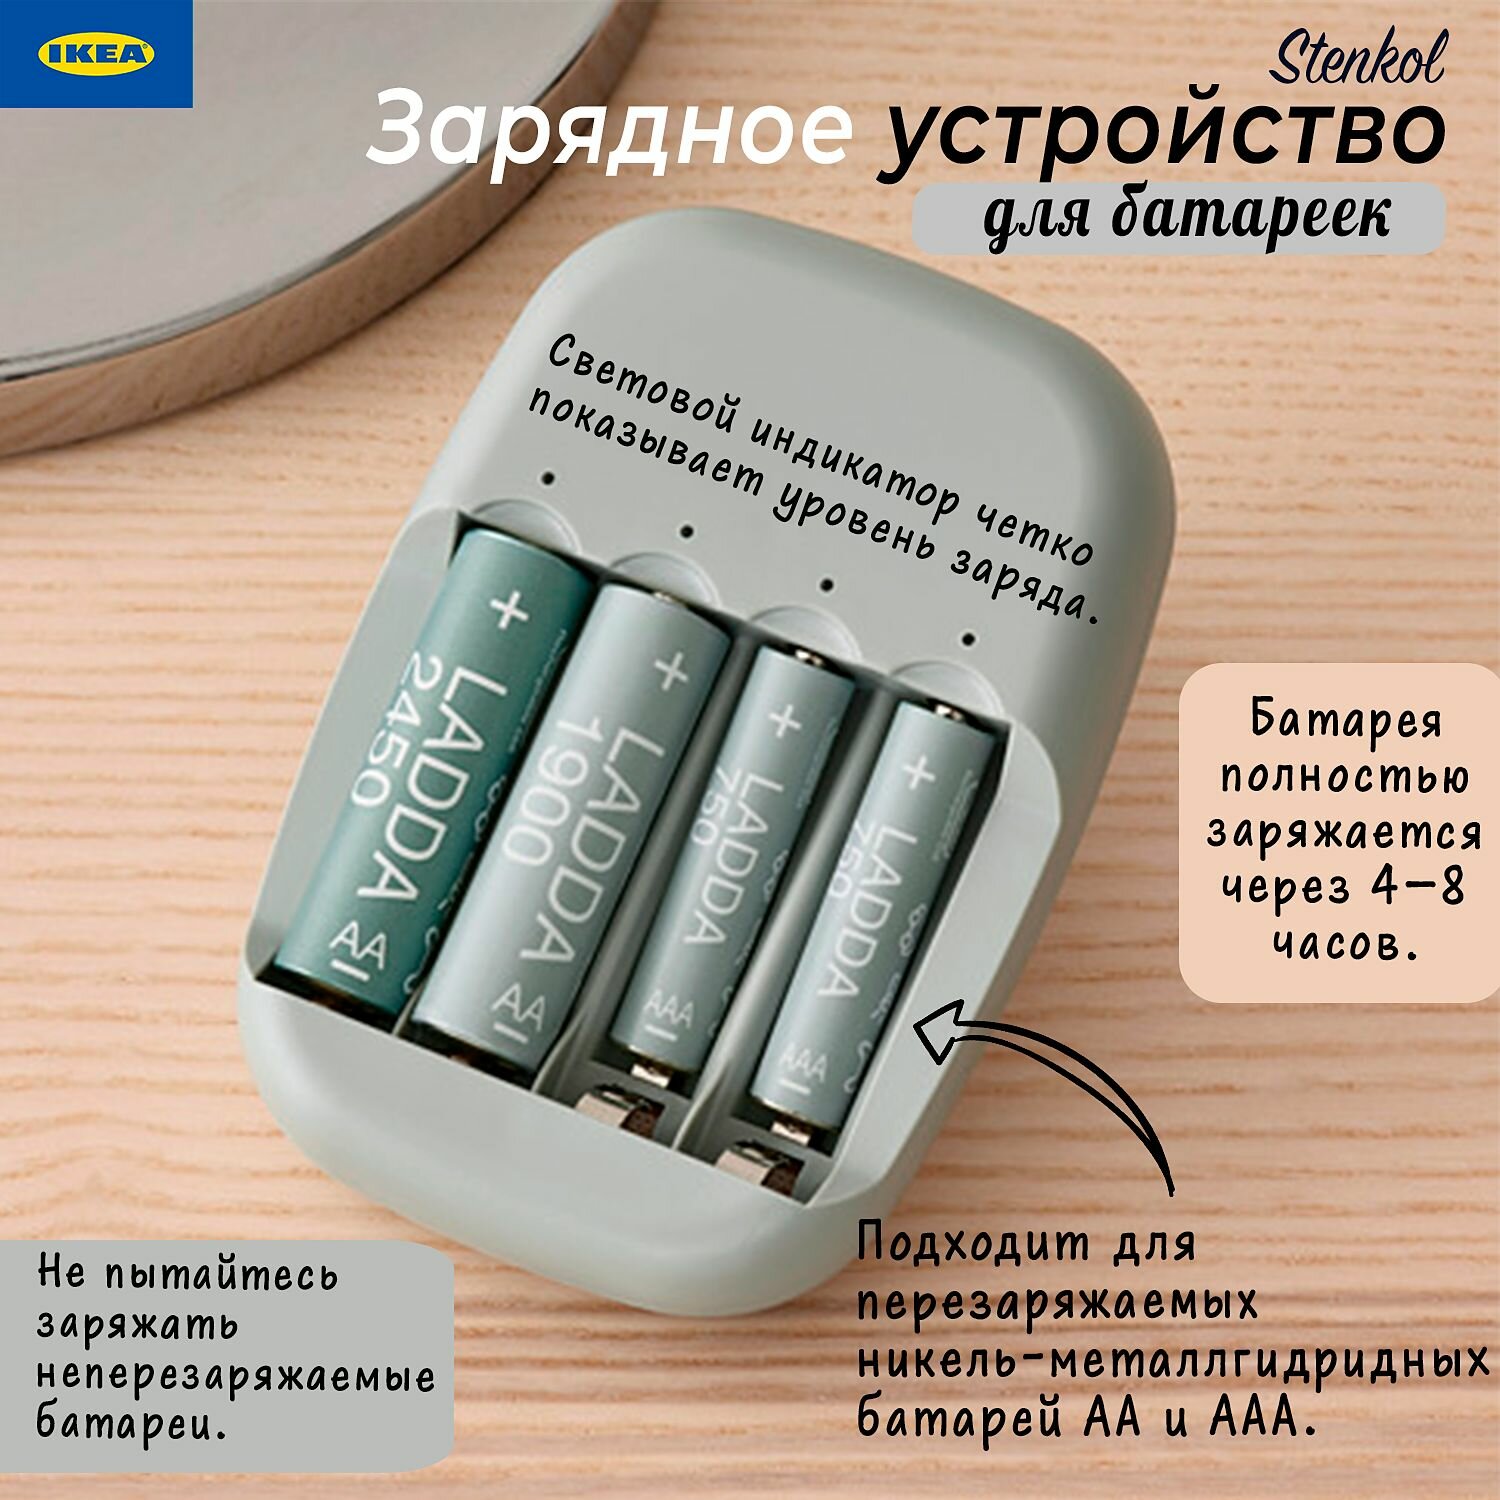 Зарядное устройство для батарее Икеа Стенкол, зарядка Ikea Stenkol, на 4 батарейки